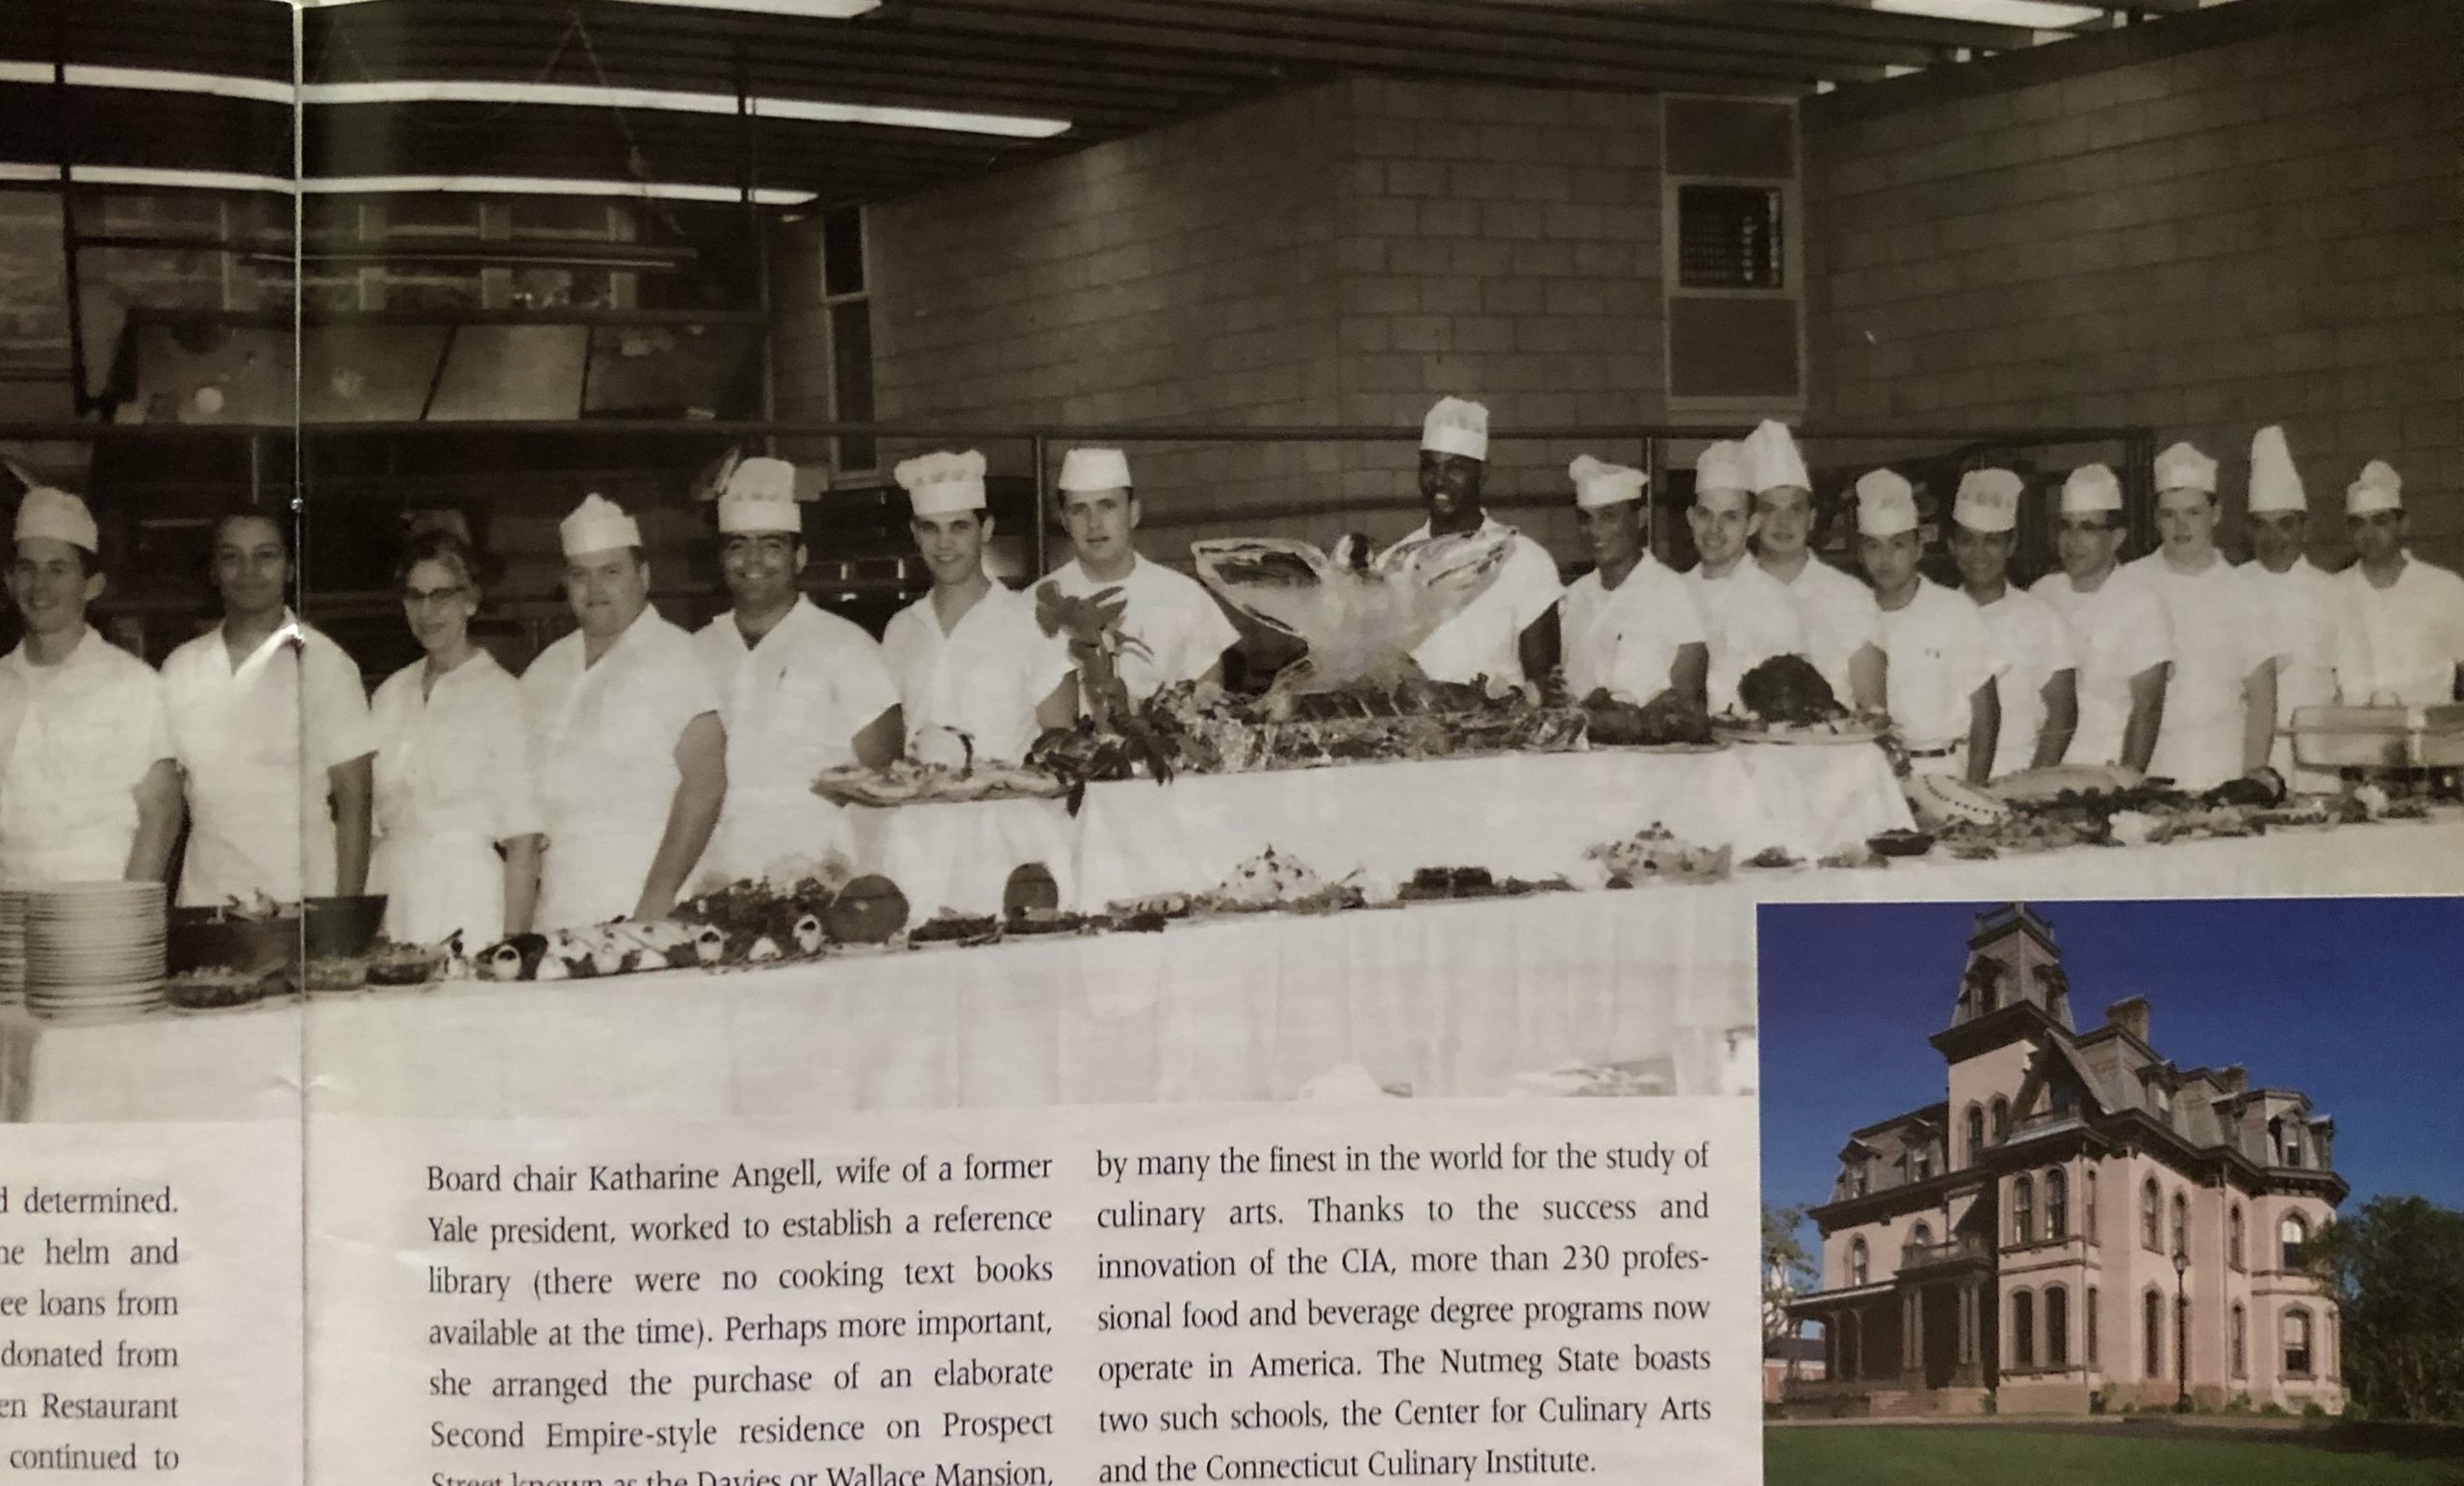     2. Culinary Institute of America: A Renowned Culinary School